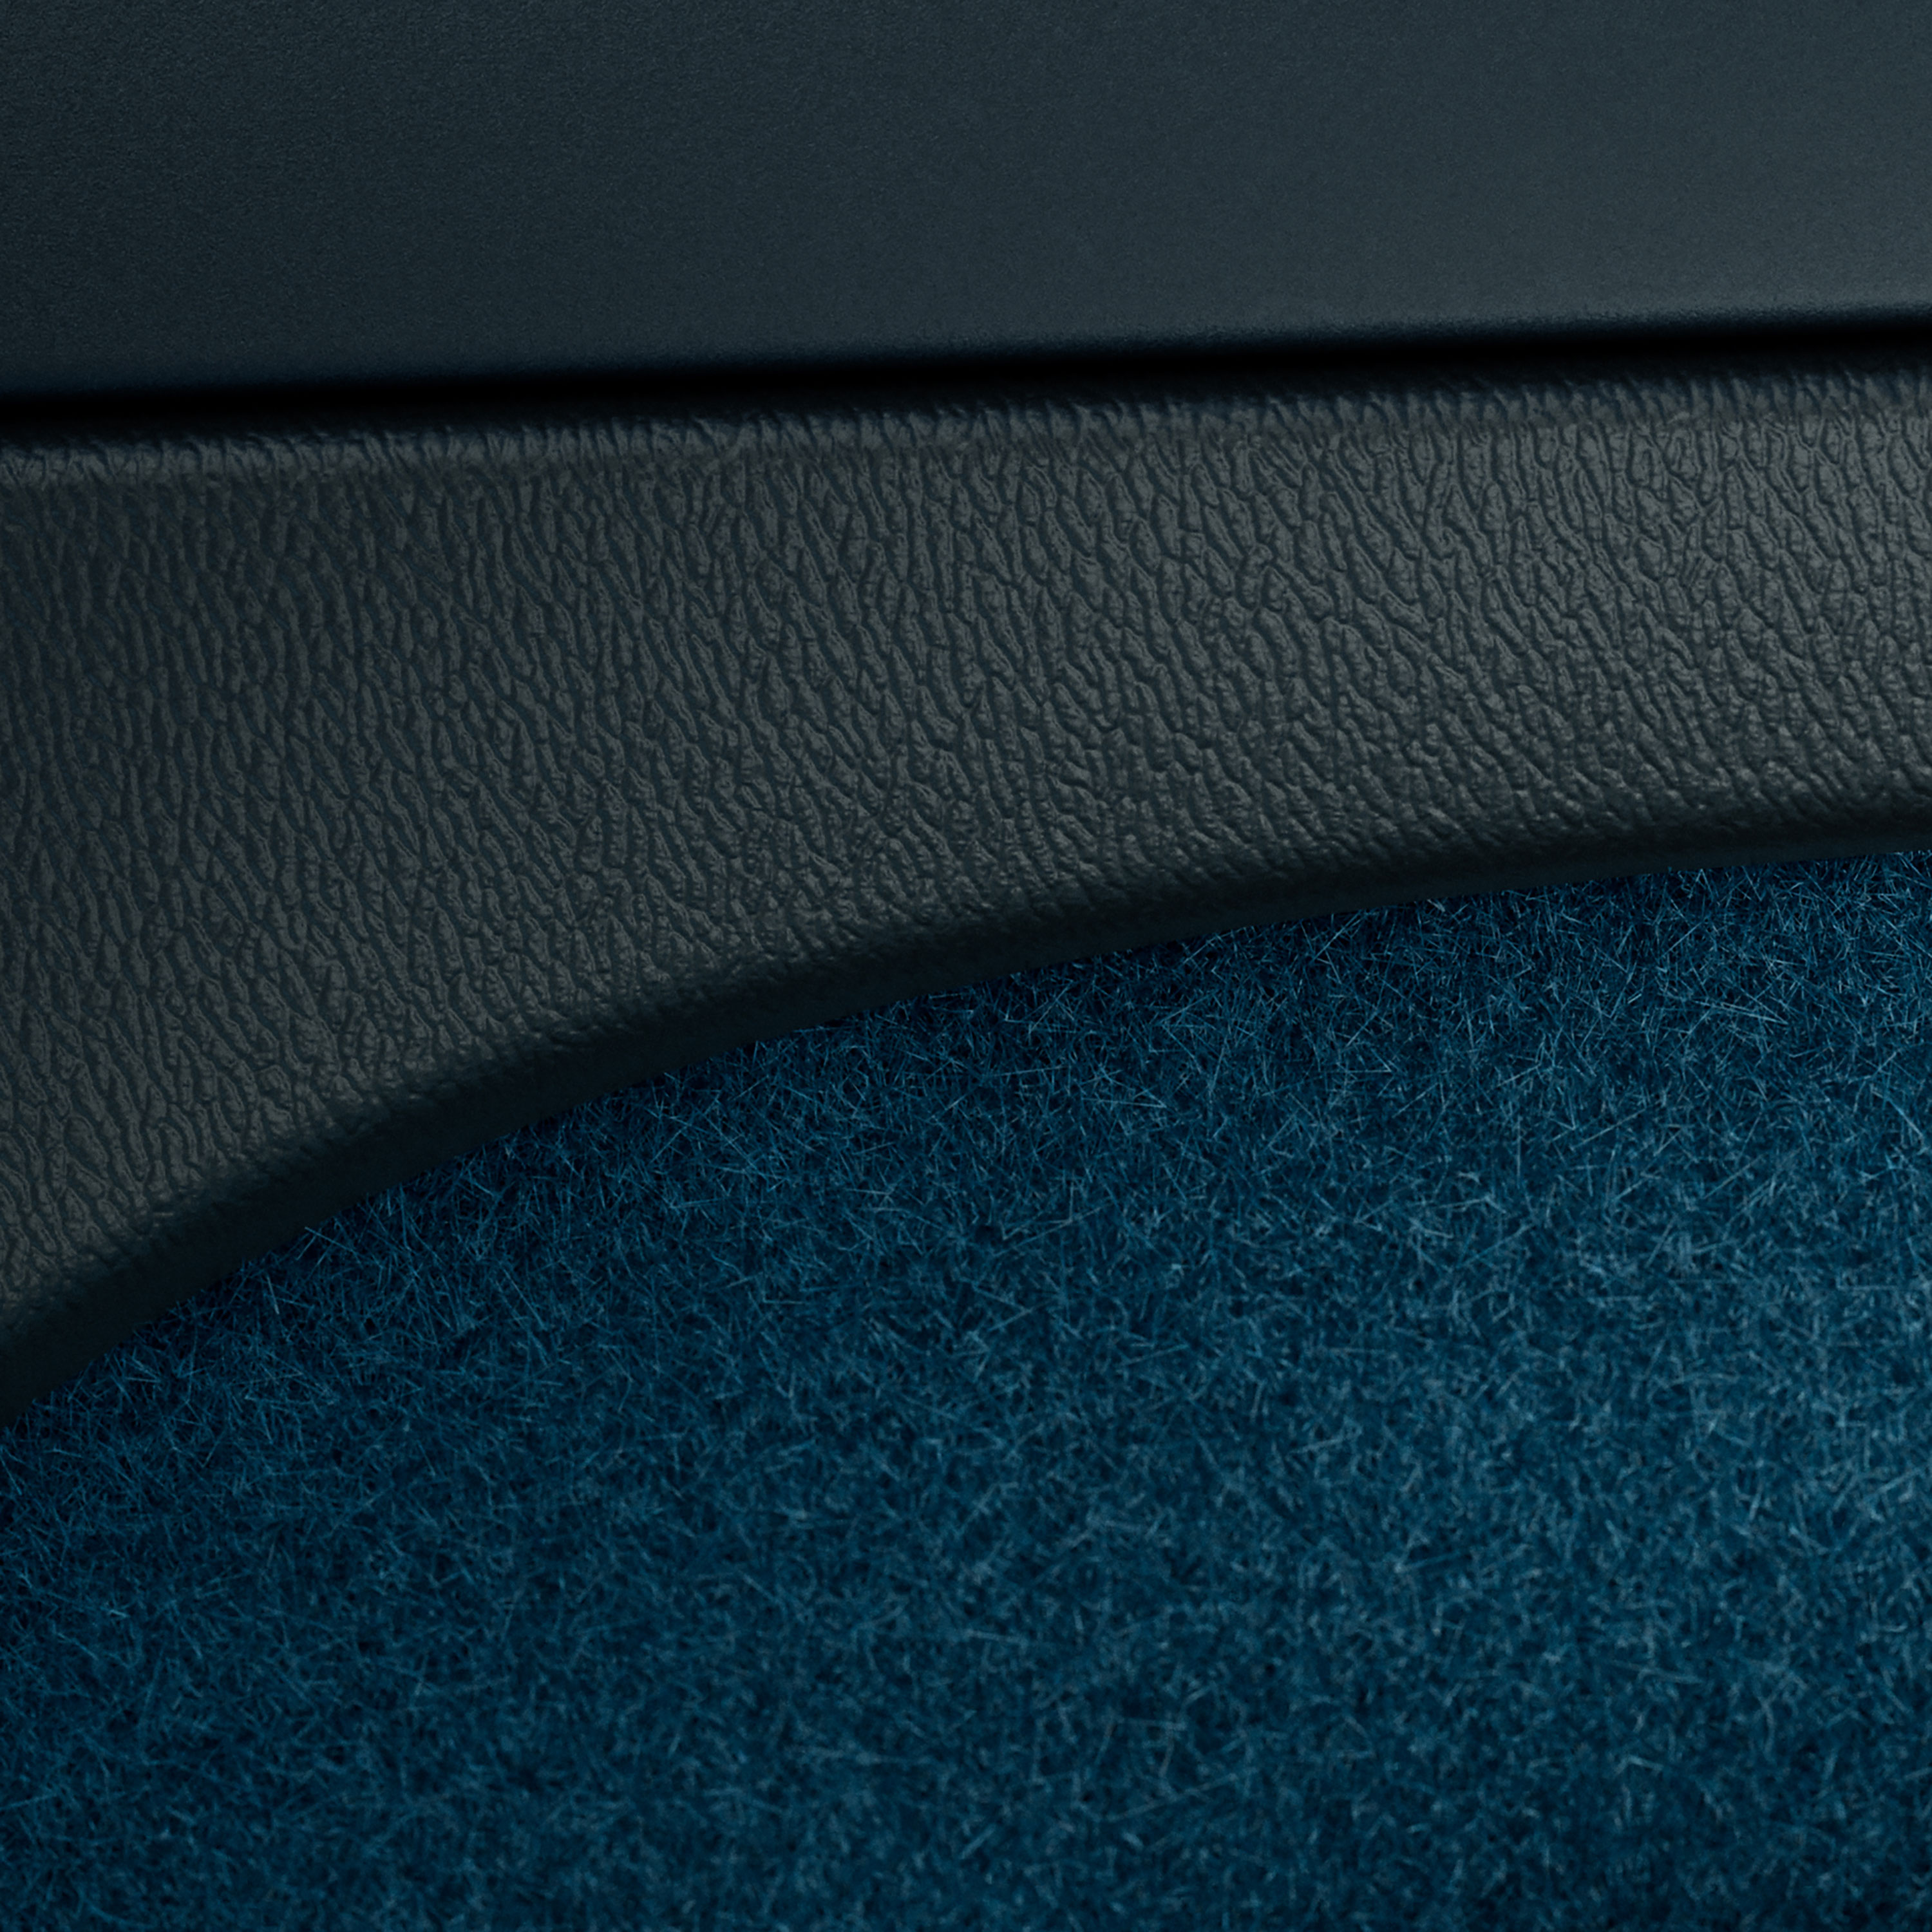 Porte intérieure avec un habillage sans cuir dans un Volvo C40 Recharge.